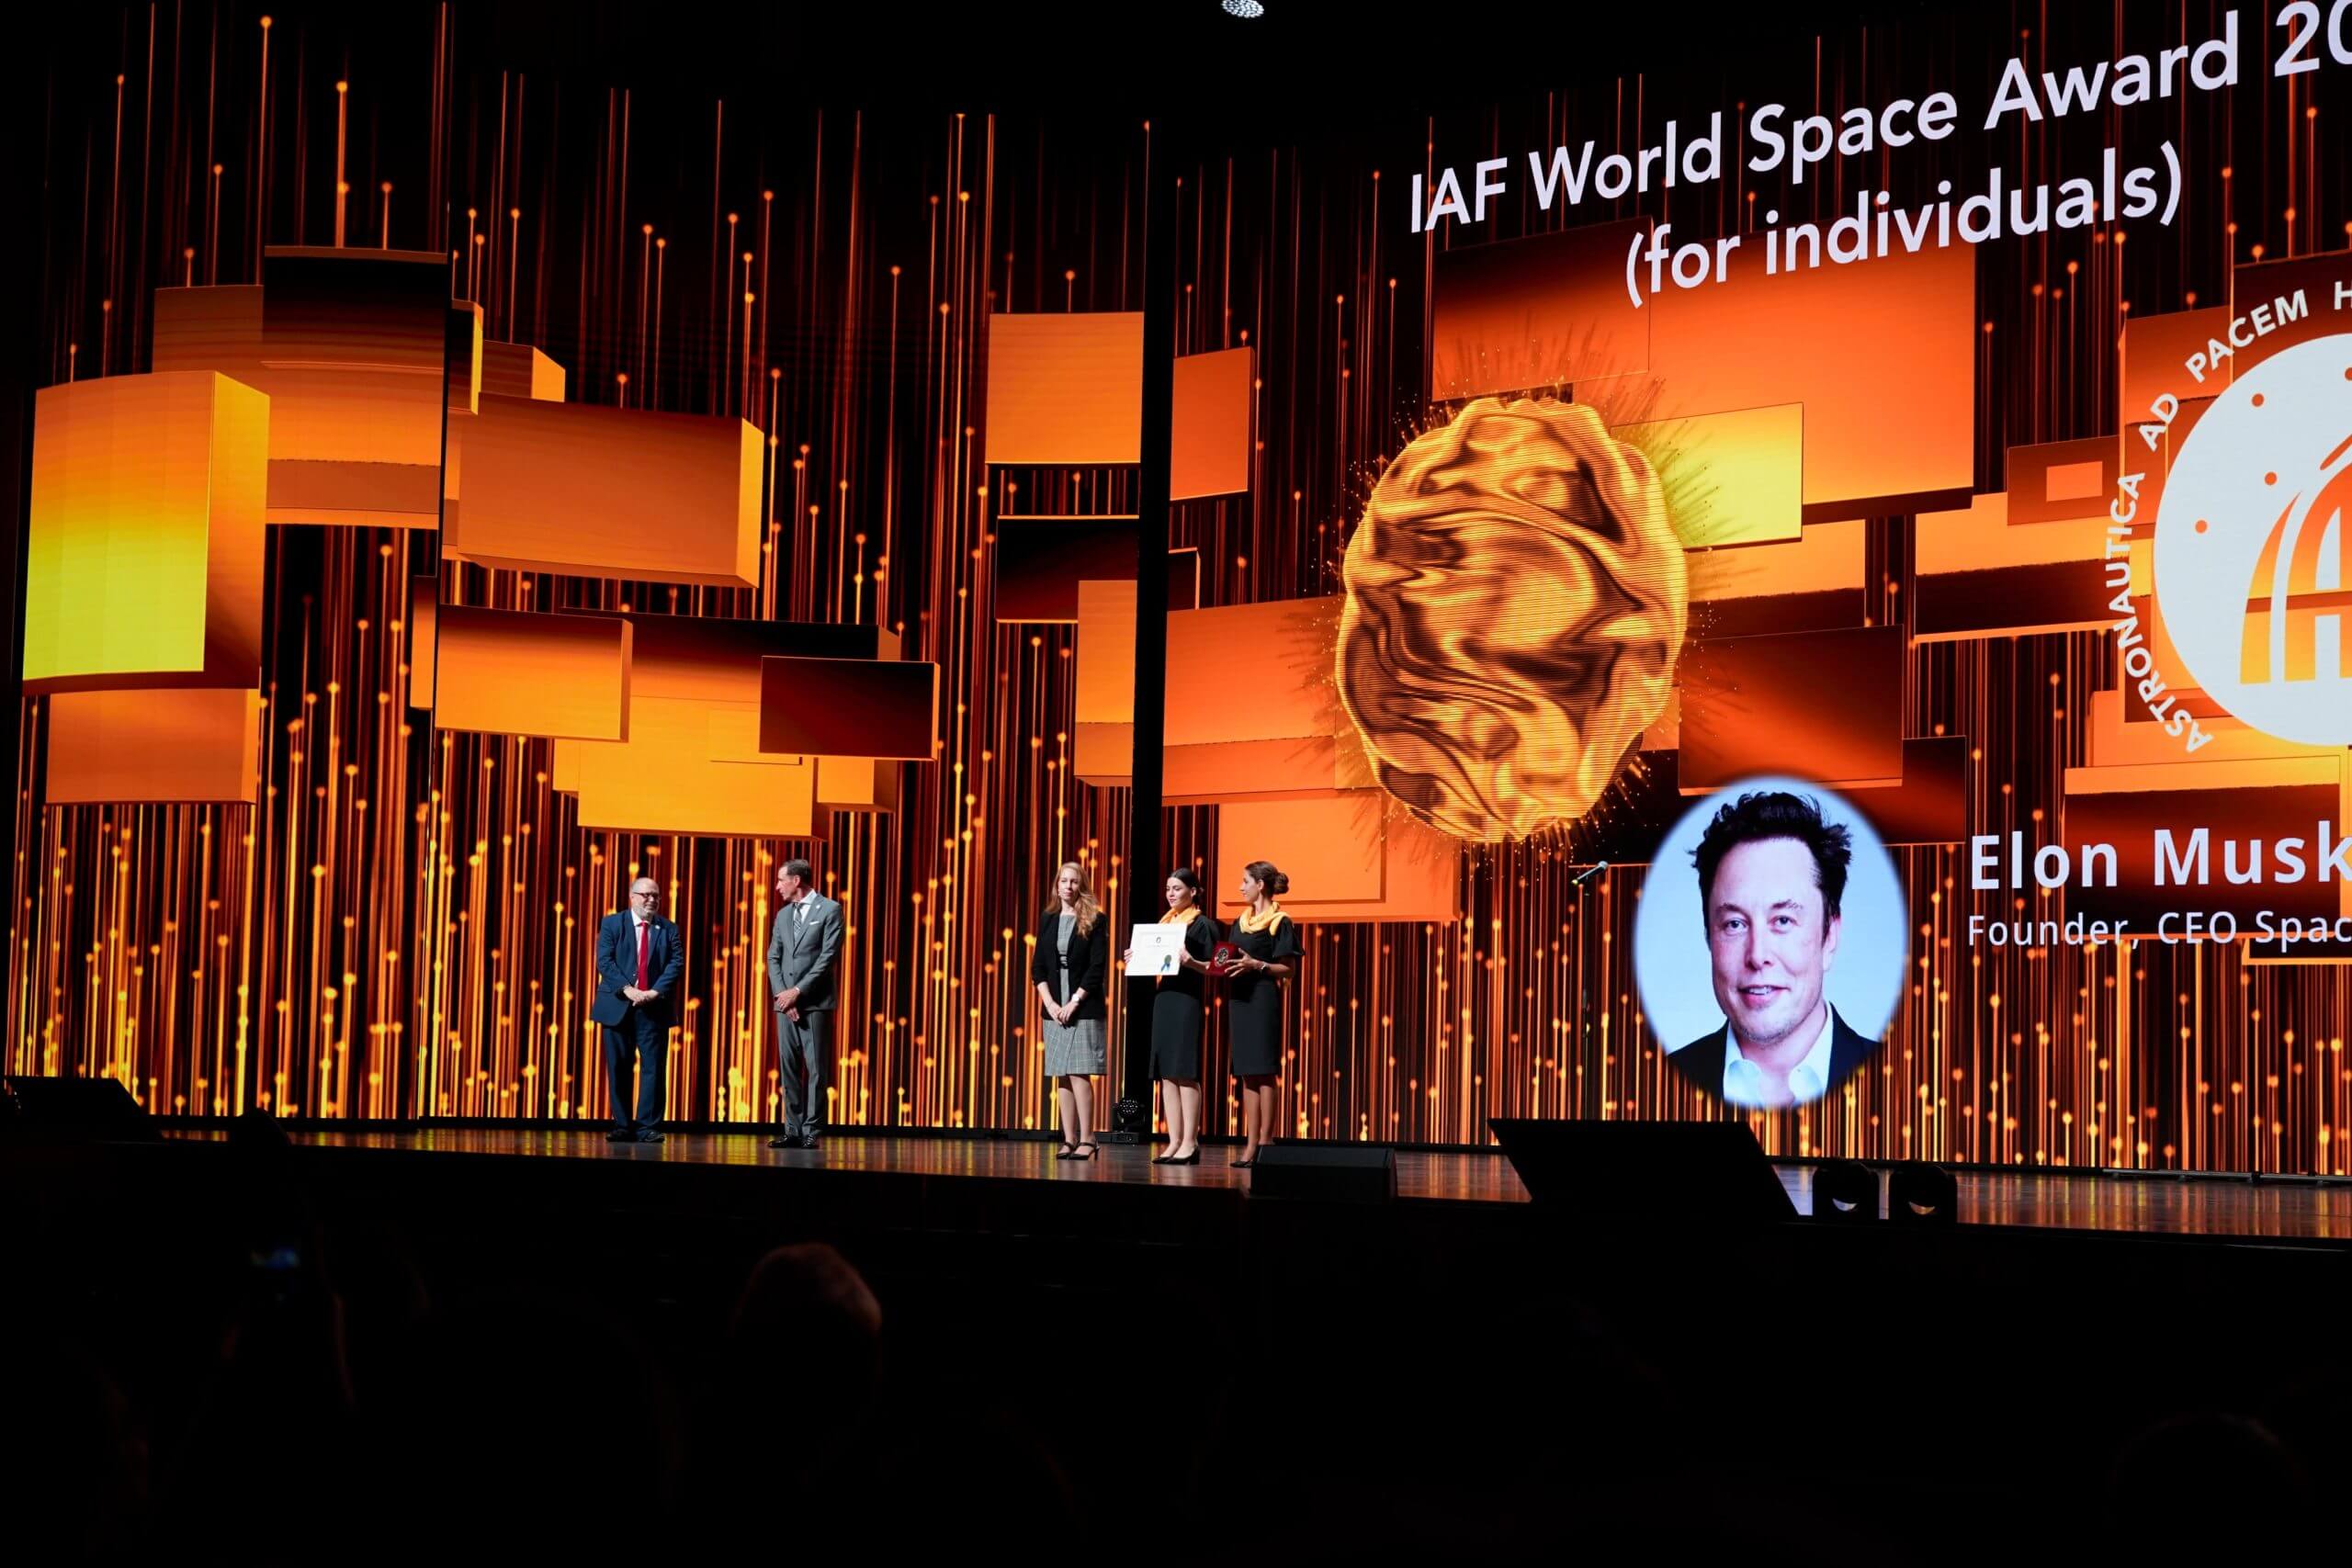 SpaceX 的埃隆·马斯克在第 74 届国际宇航大会上荣获 IAF 世界太空奖